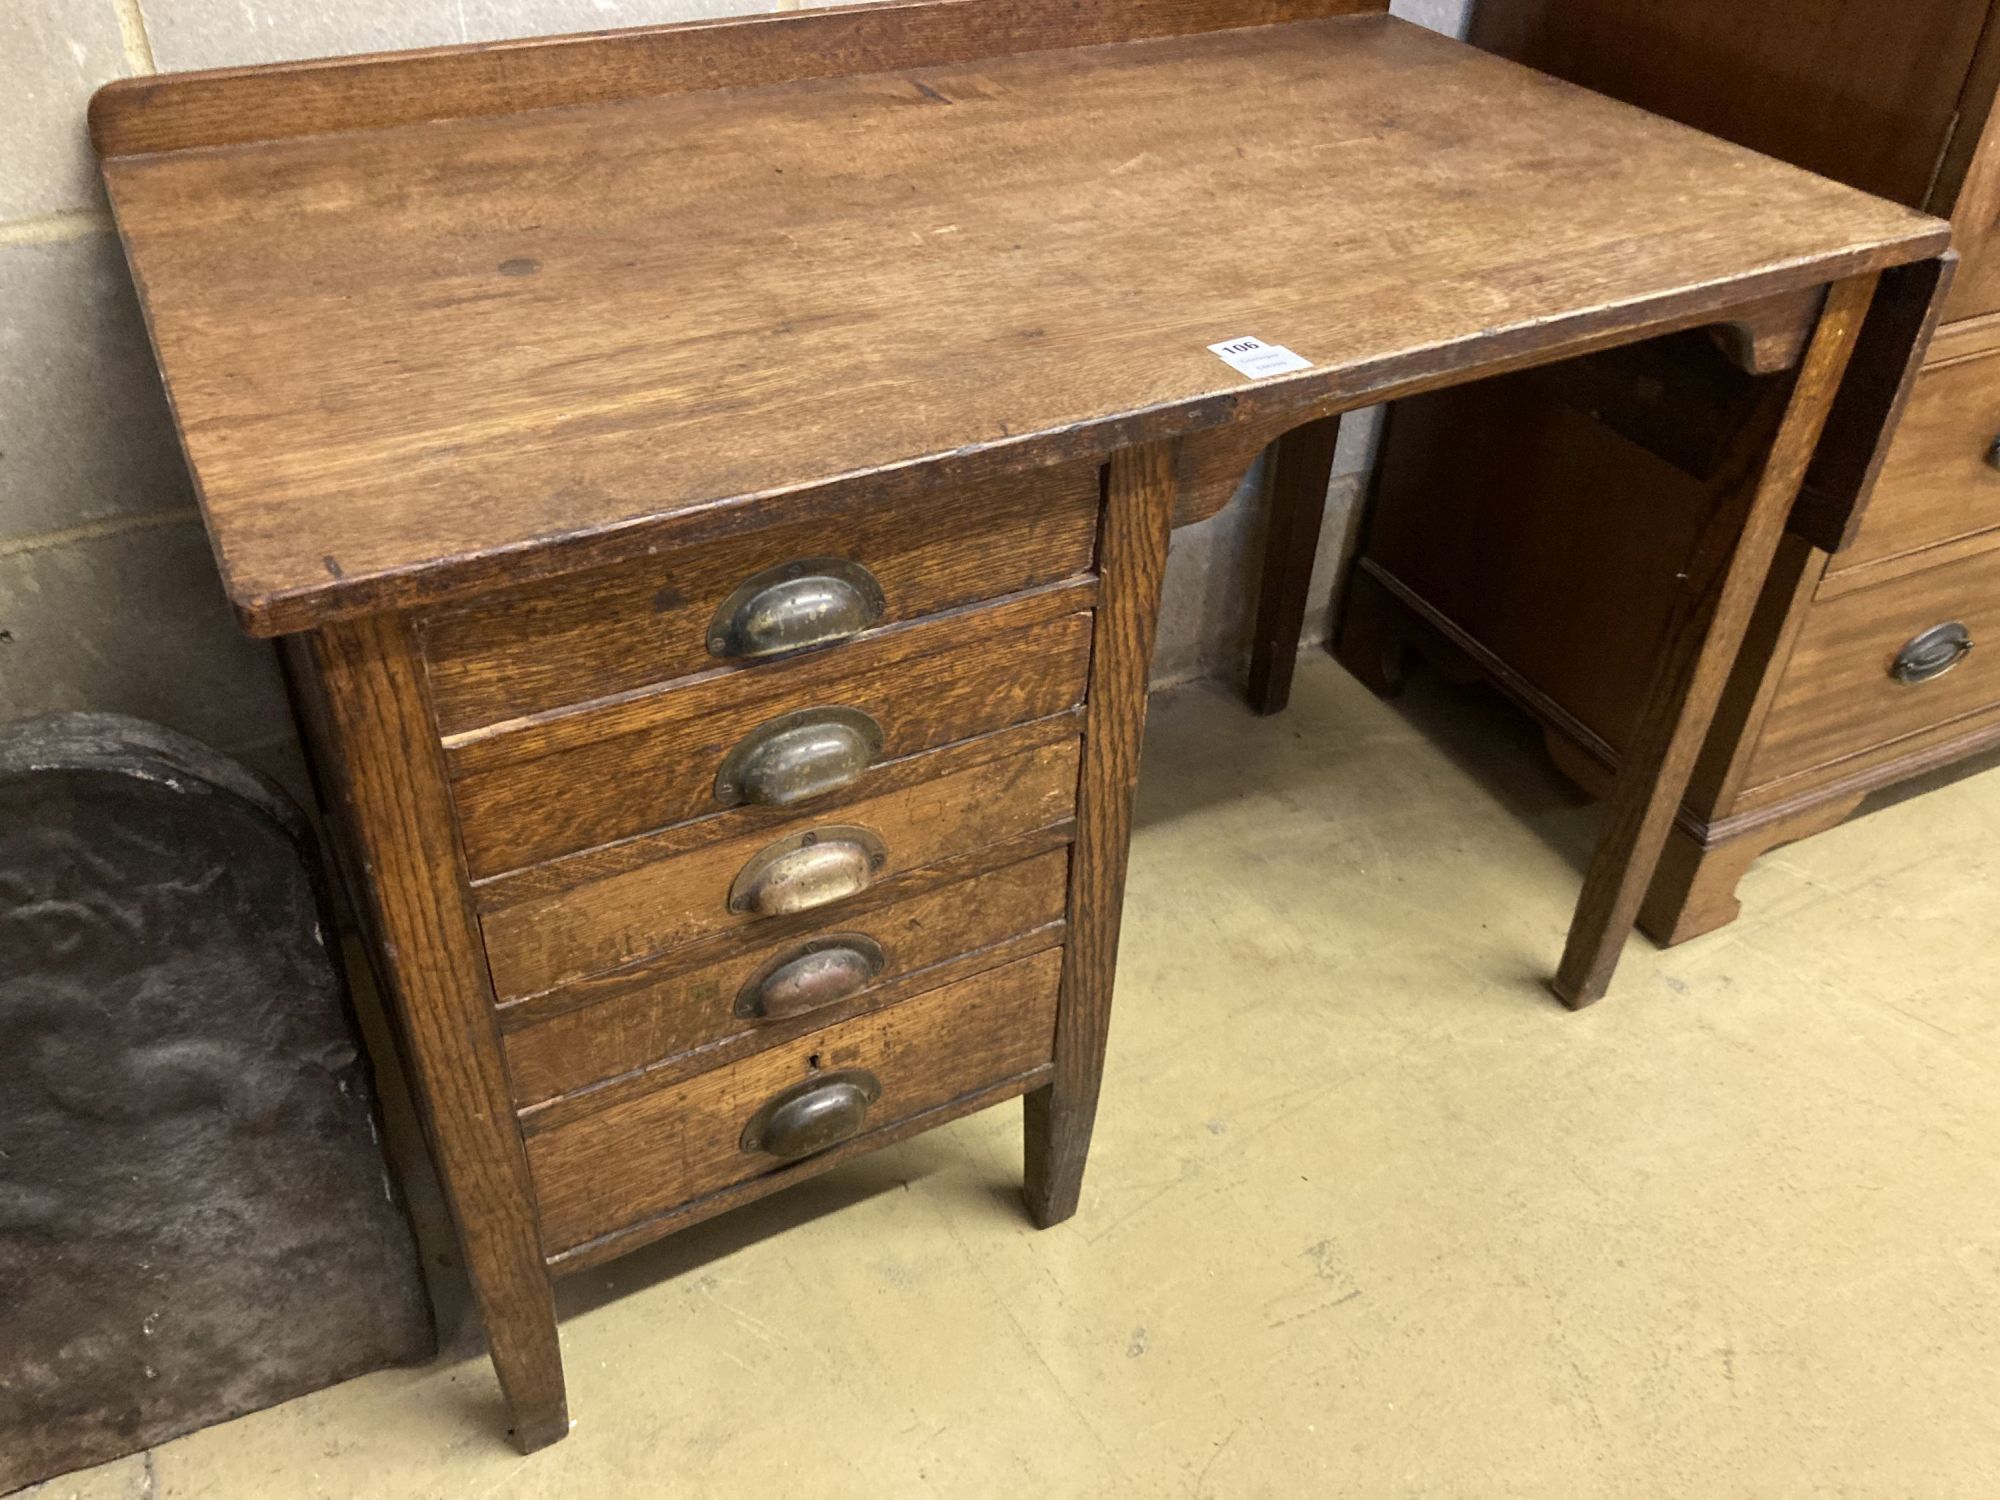 An early 20th century oak five drawer drop flap kneehole desk, width 108cm, depth 60cm, height 78cm